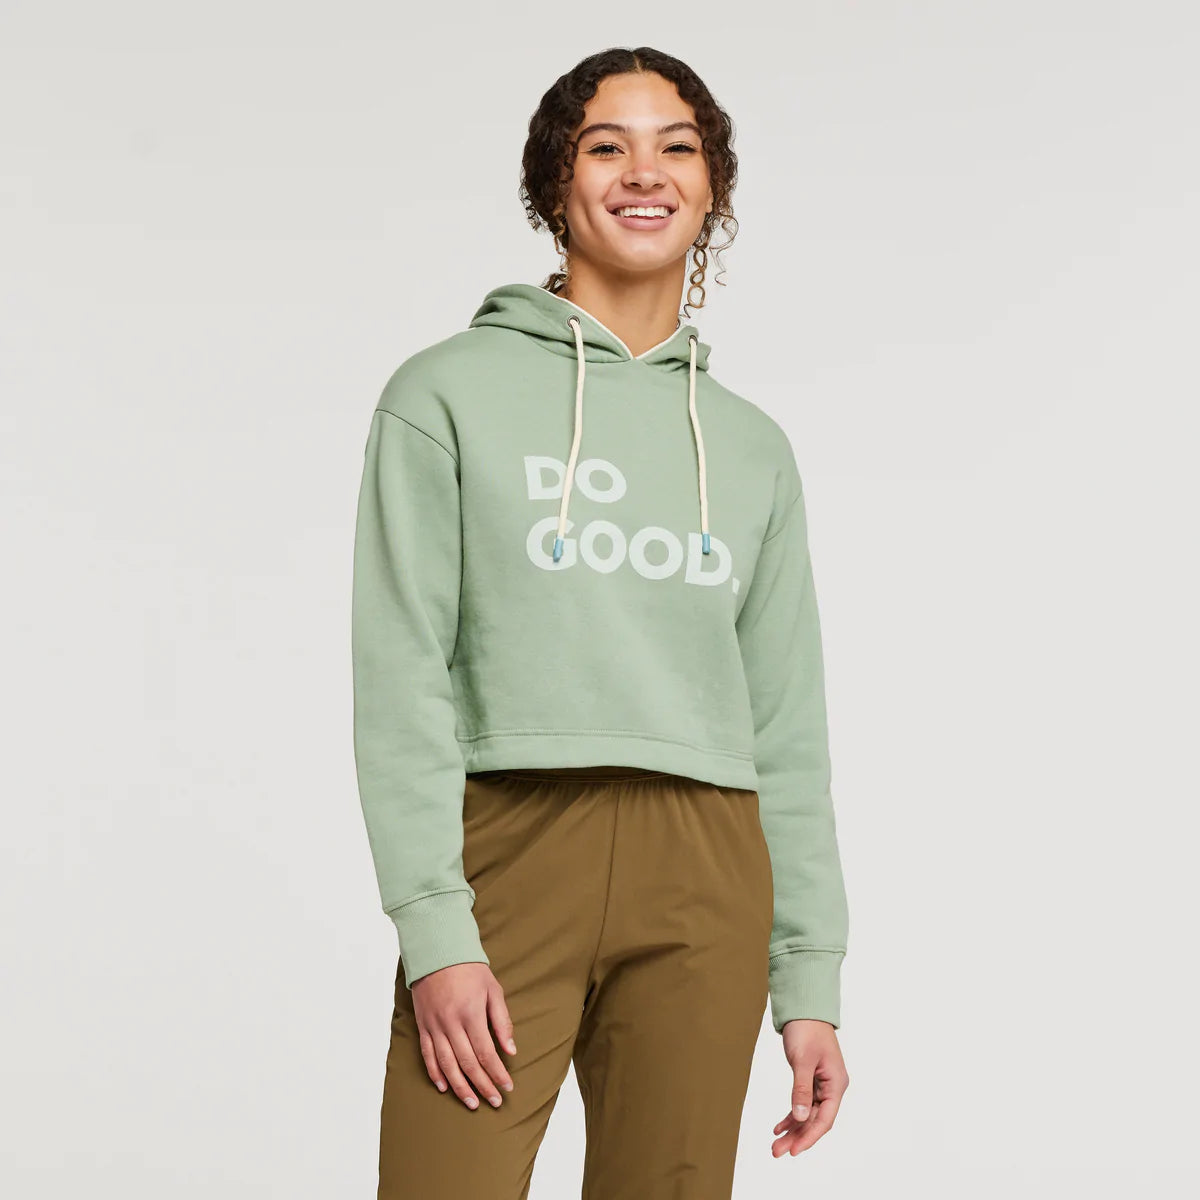 Do Good Crop Womens Sweatshirt - Silver Leaf